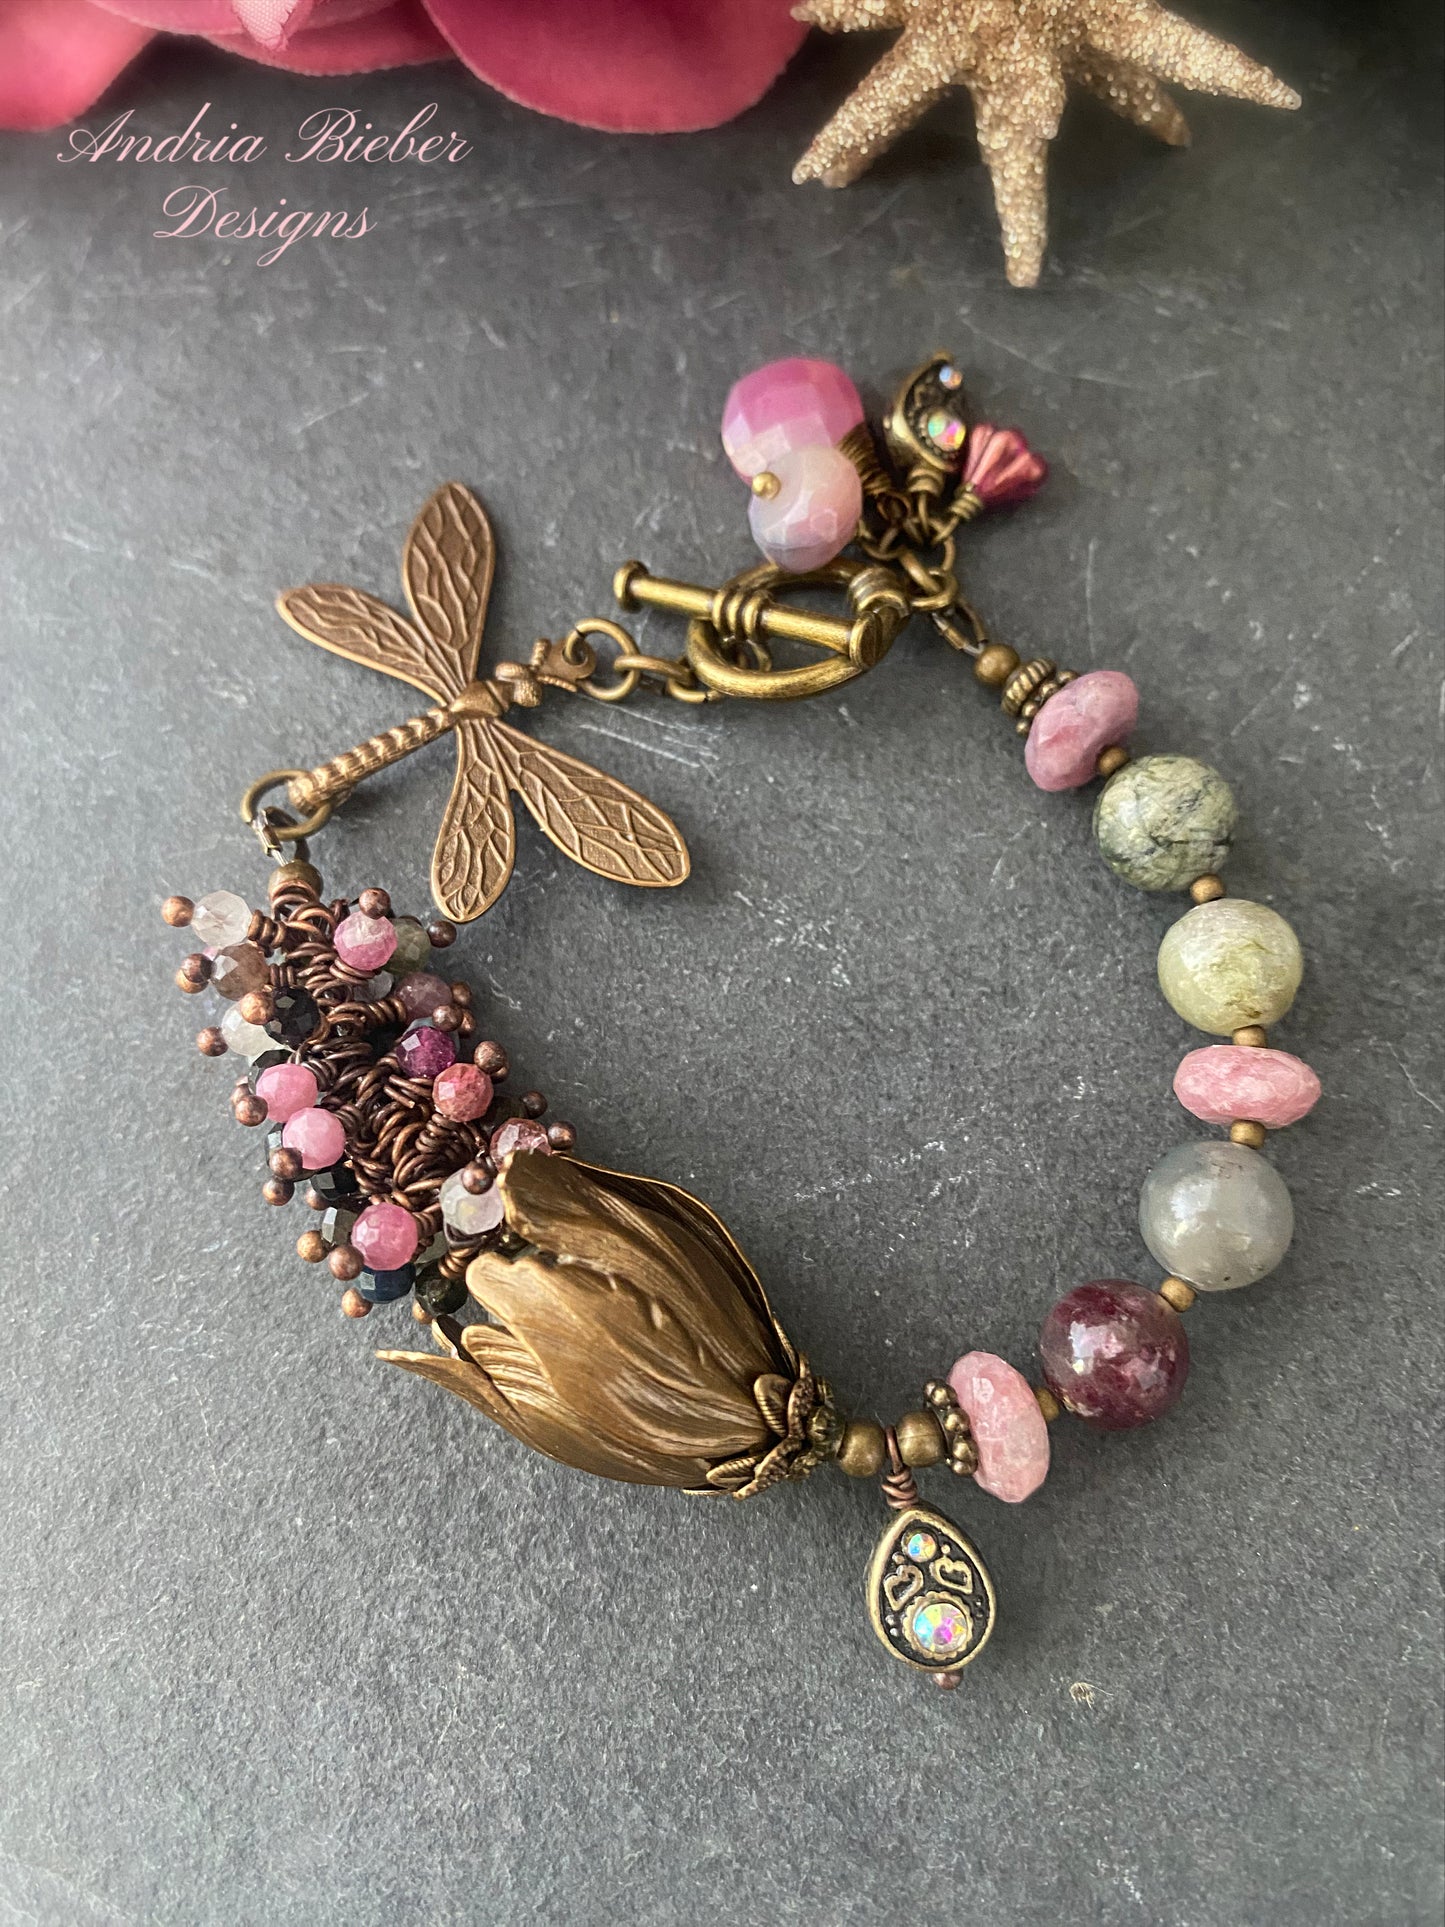 Watermelon tourmaline gemstone, dragonfly, charm bracelet